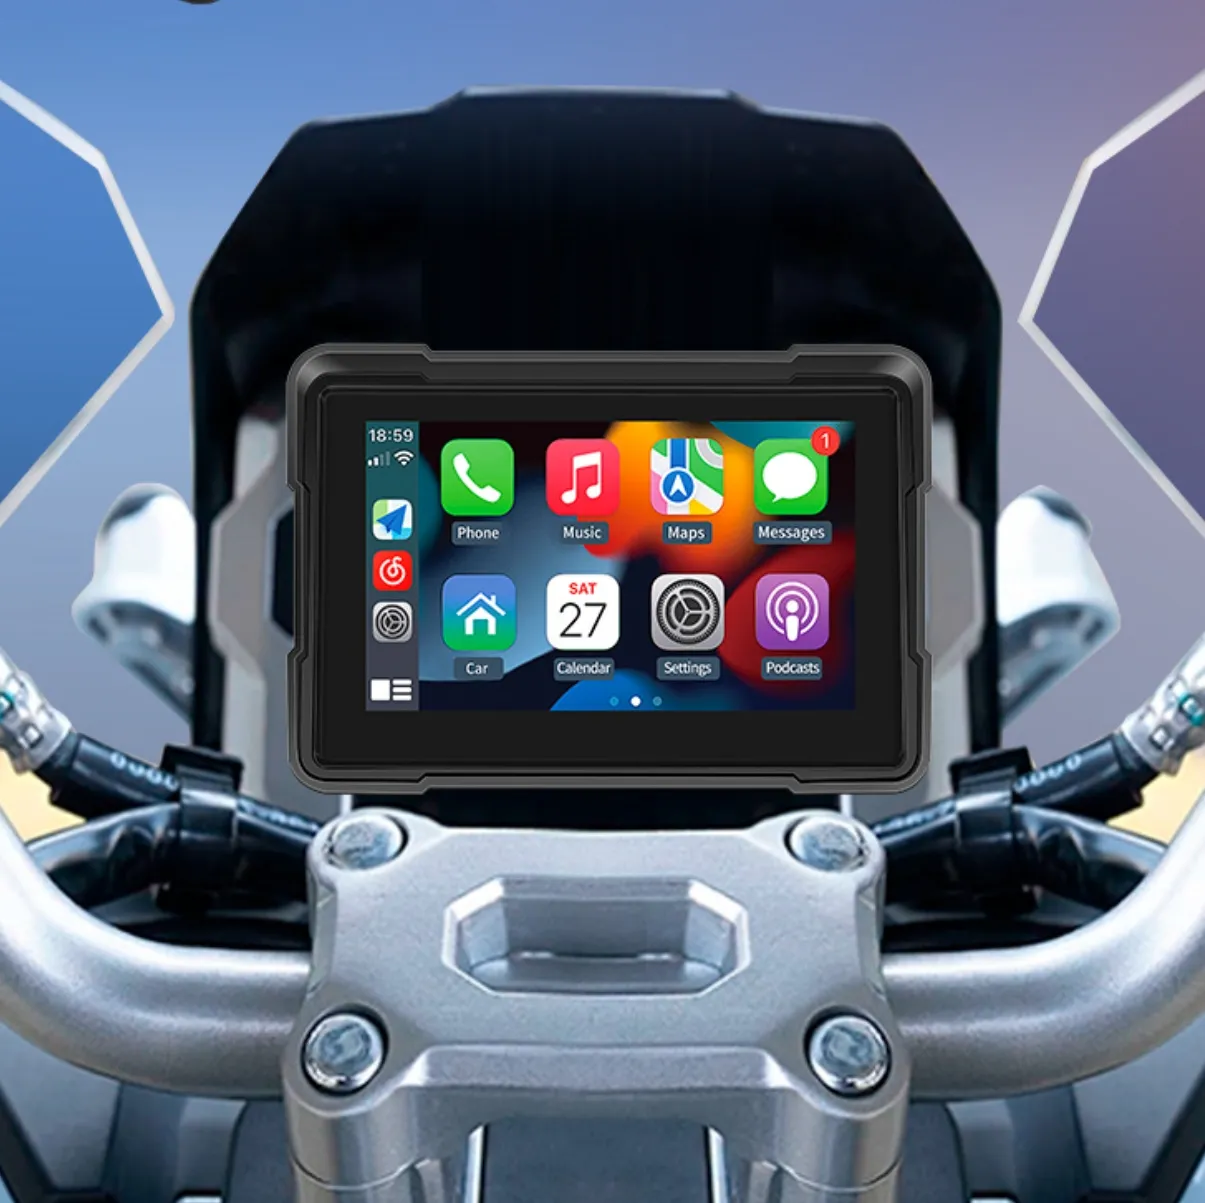 Carplay 오토바이 네비게이션 5 인치 터치 스크린 듀얼 레코딩 DVR 오토바이 라디오 플레이어와 오토바이 GPS